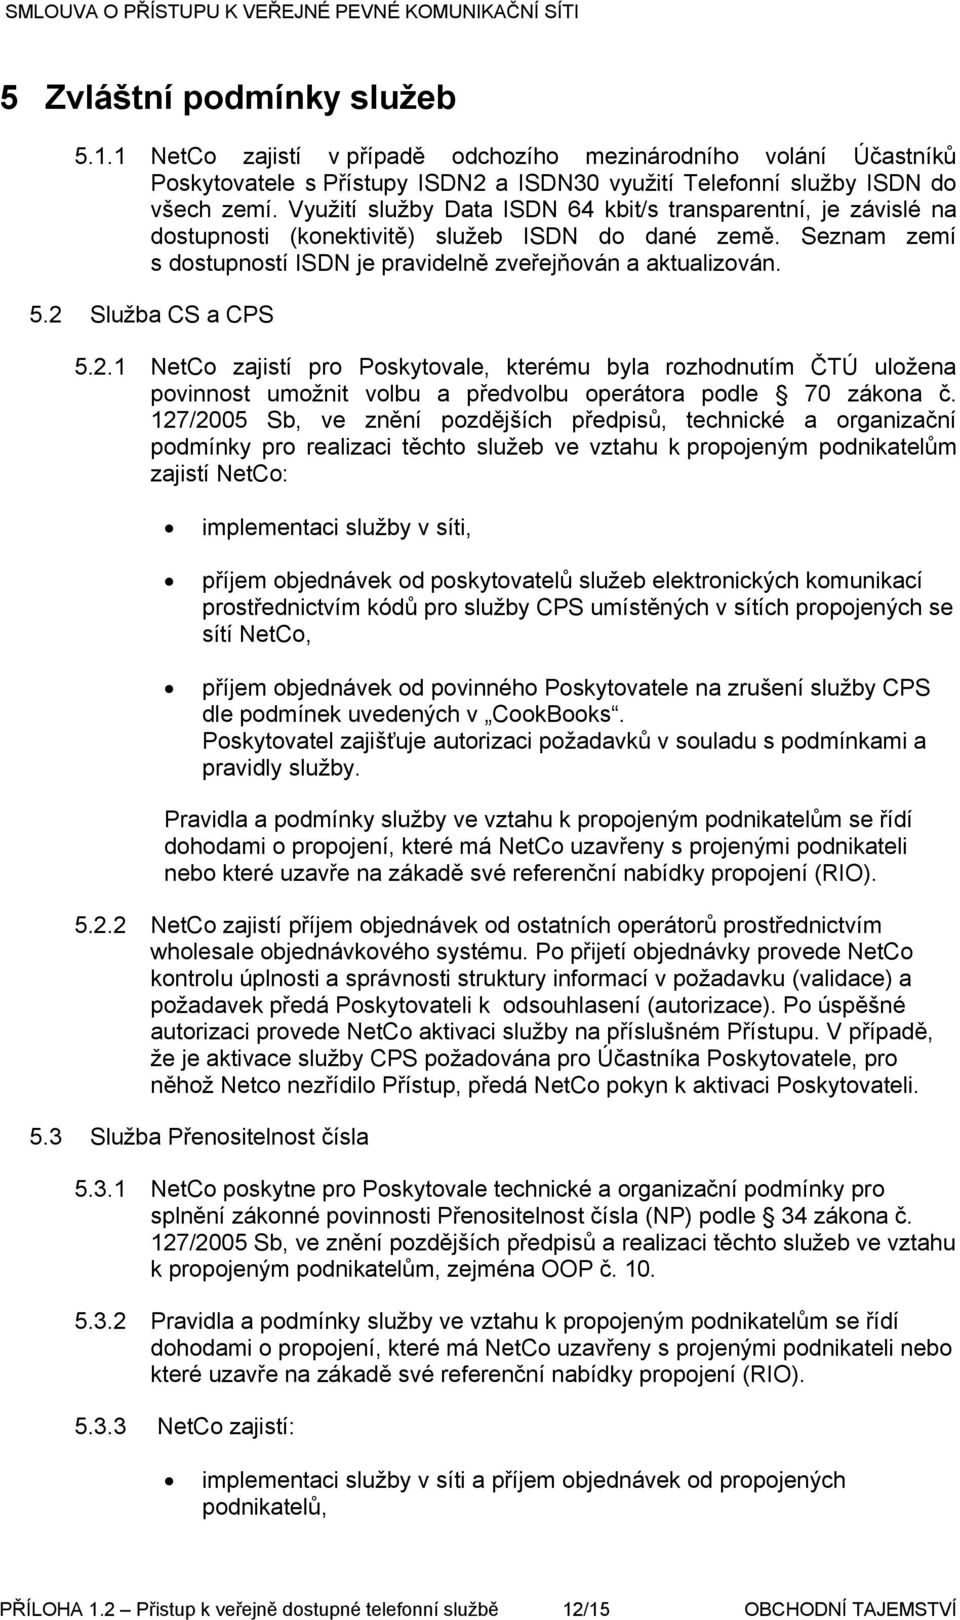 2 Služba CS a CPS 5.2.1 NetCo zajistí pro Poskytovale, kterému byla rozhodnutím ČTÚ uložena povinnost umožnit volbu a předvolbu operátora podle 70 zákona č.